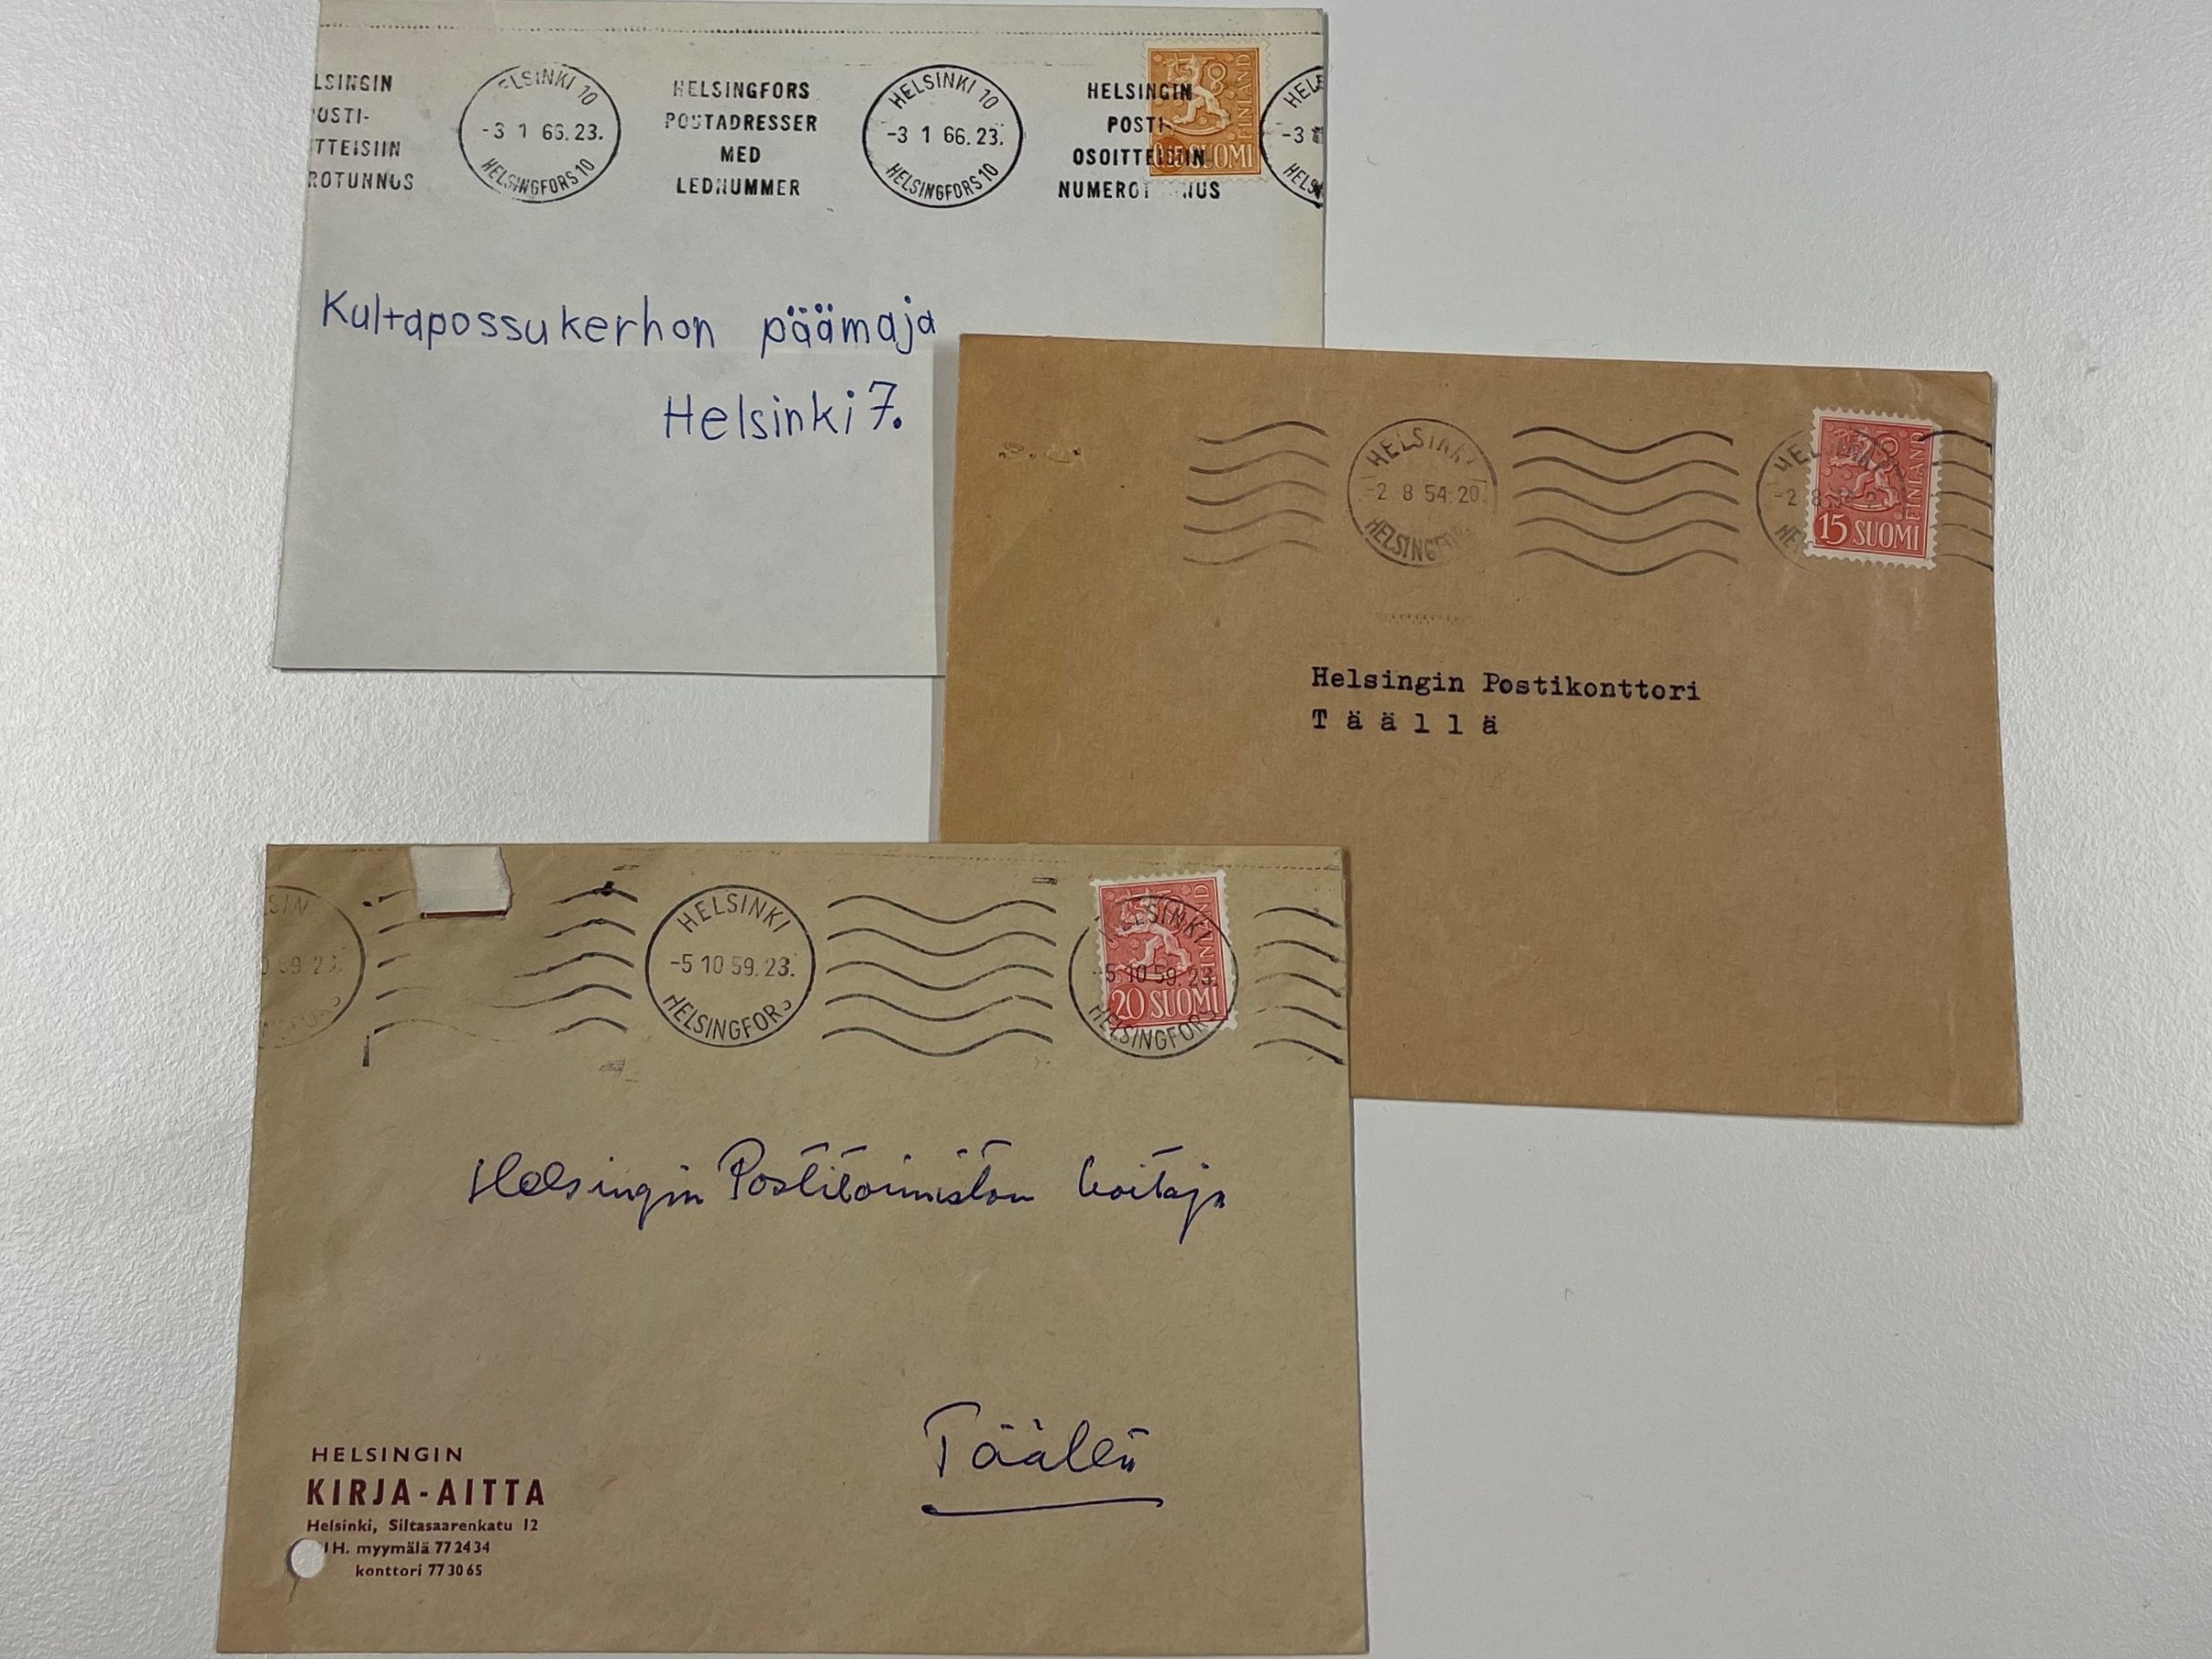 Kolme kirjekuorta 1950- ja 60-luvuilta, joissa osoitetiedot eivät ole täydelliset.